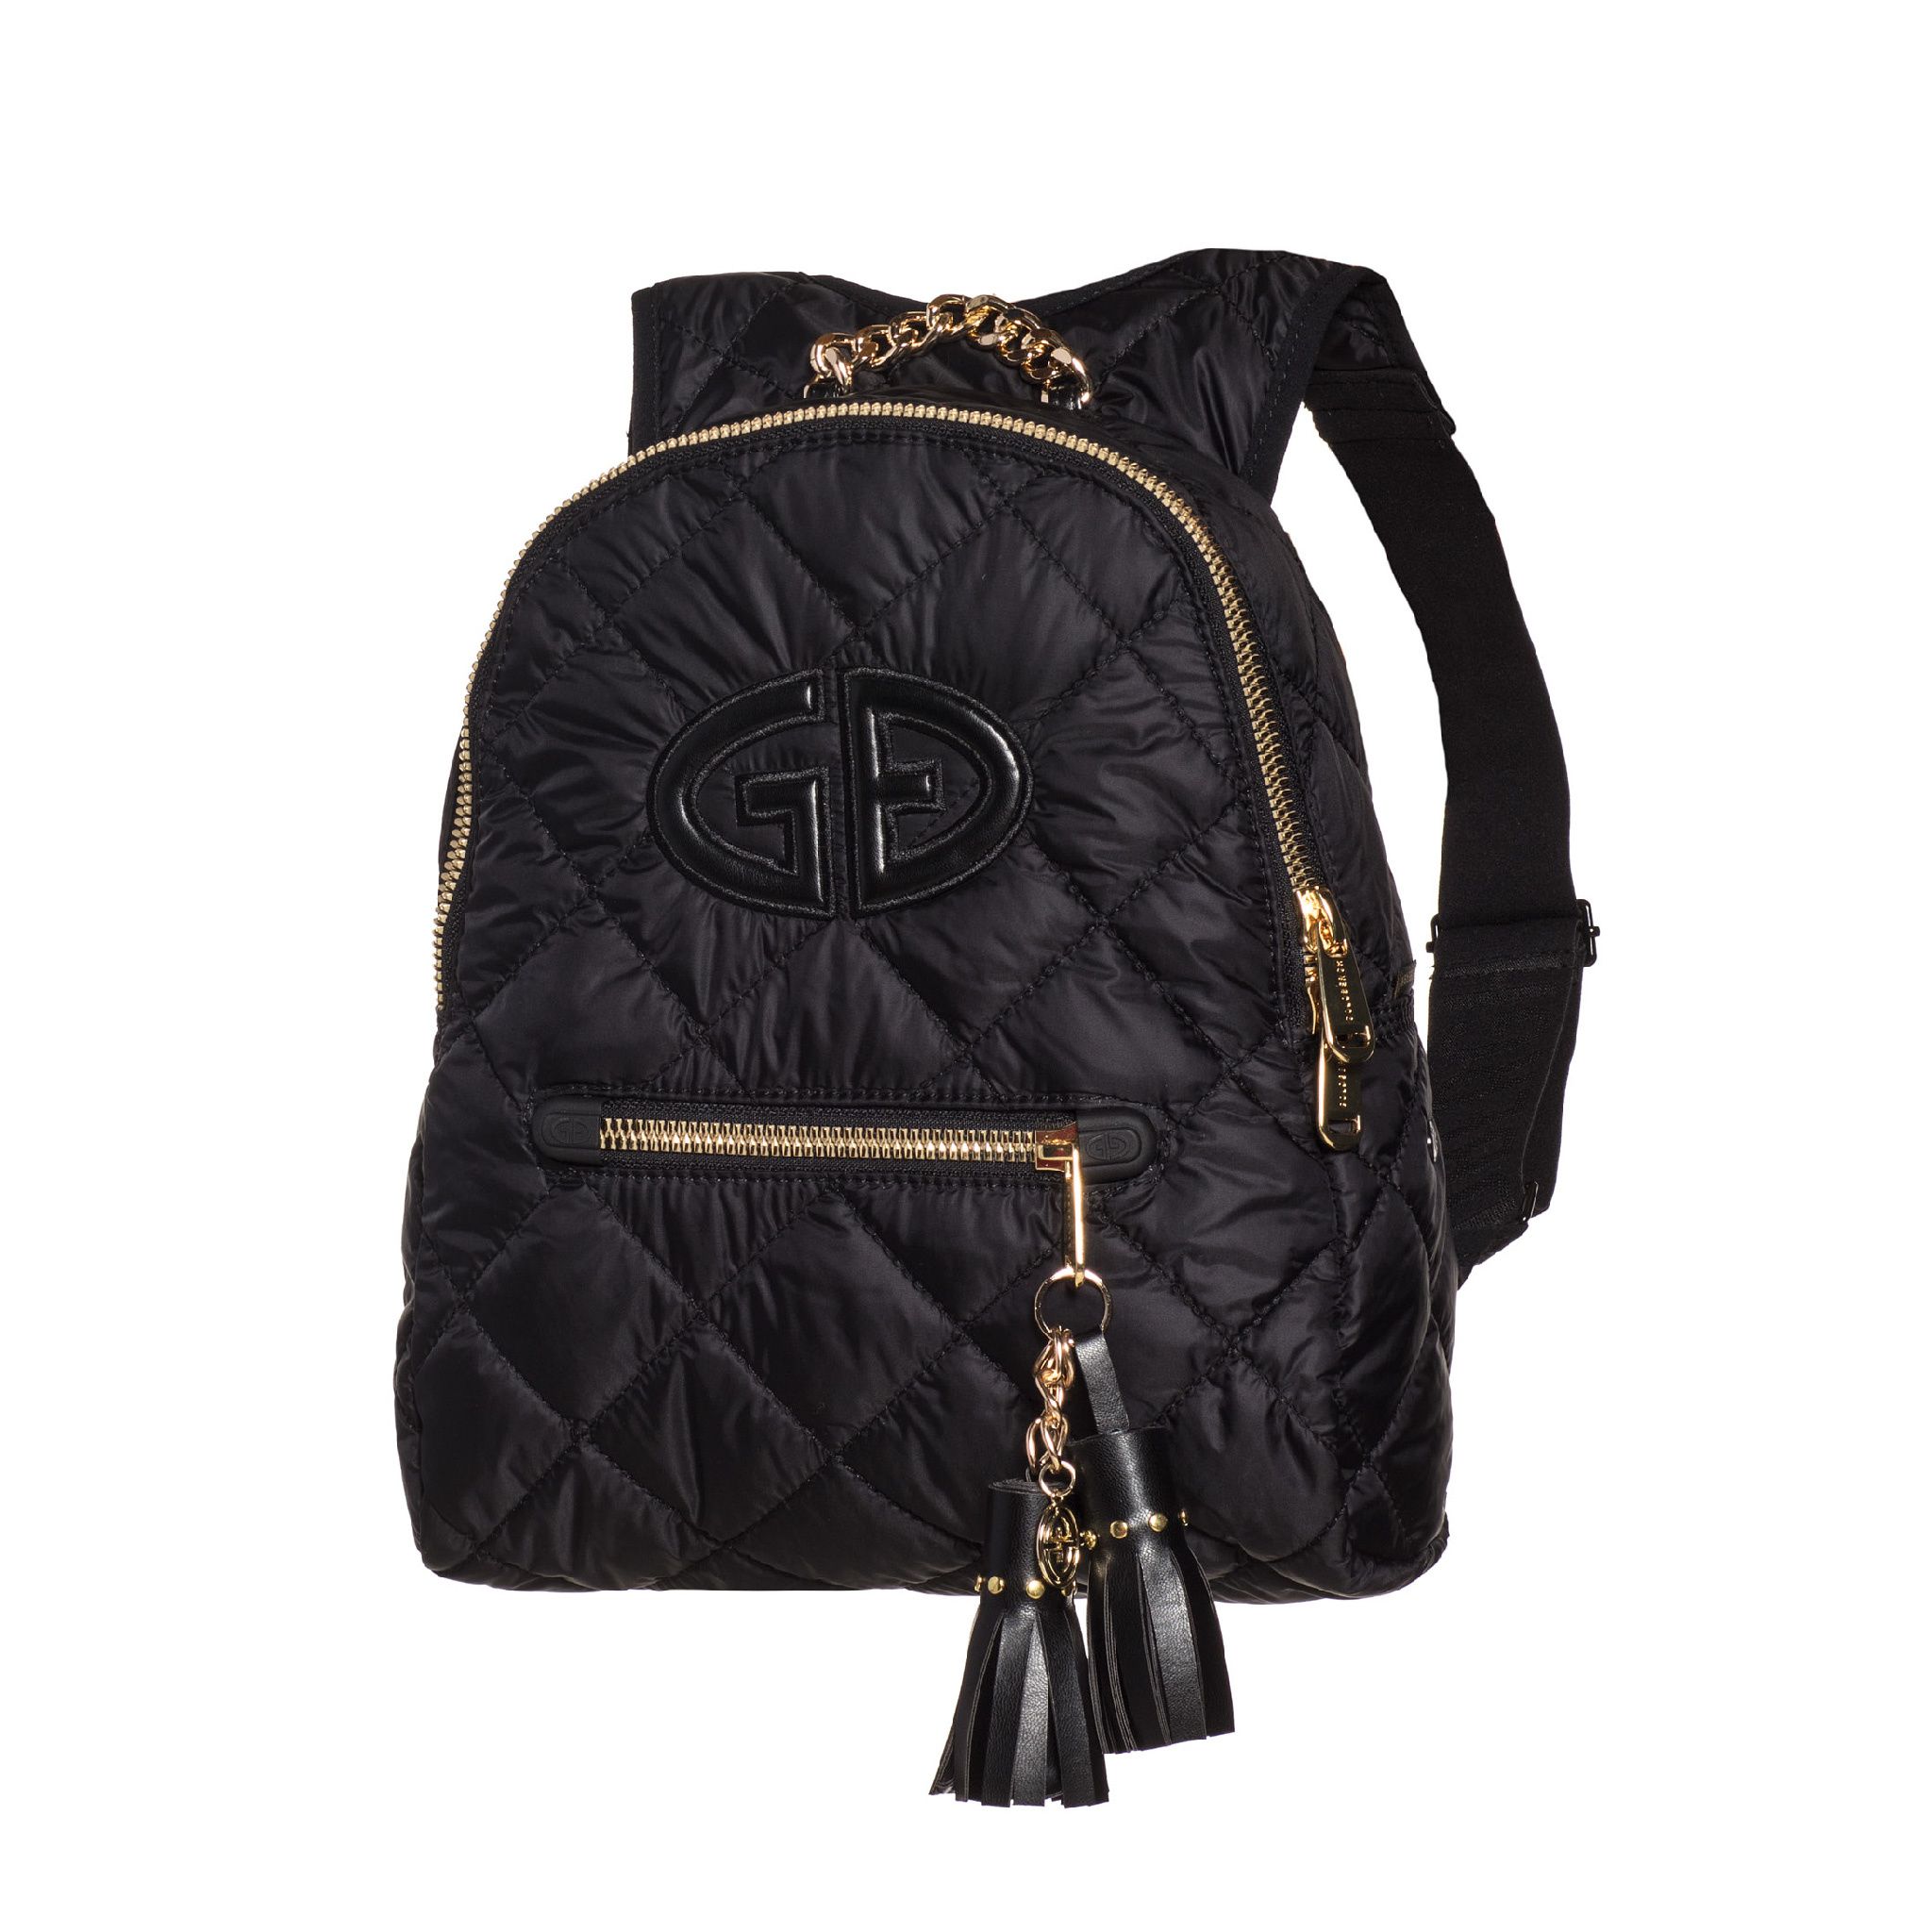 Bagpacks -  goldbergh SOPHIA Backpack